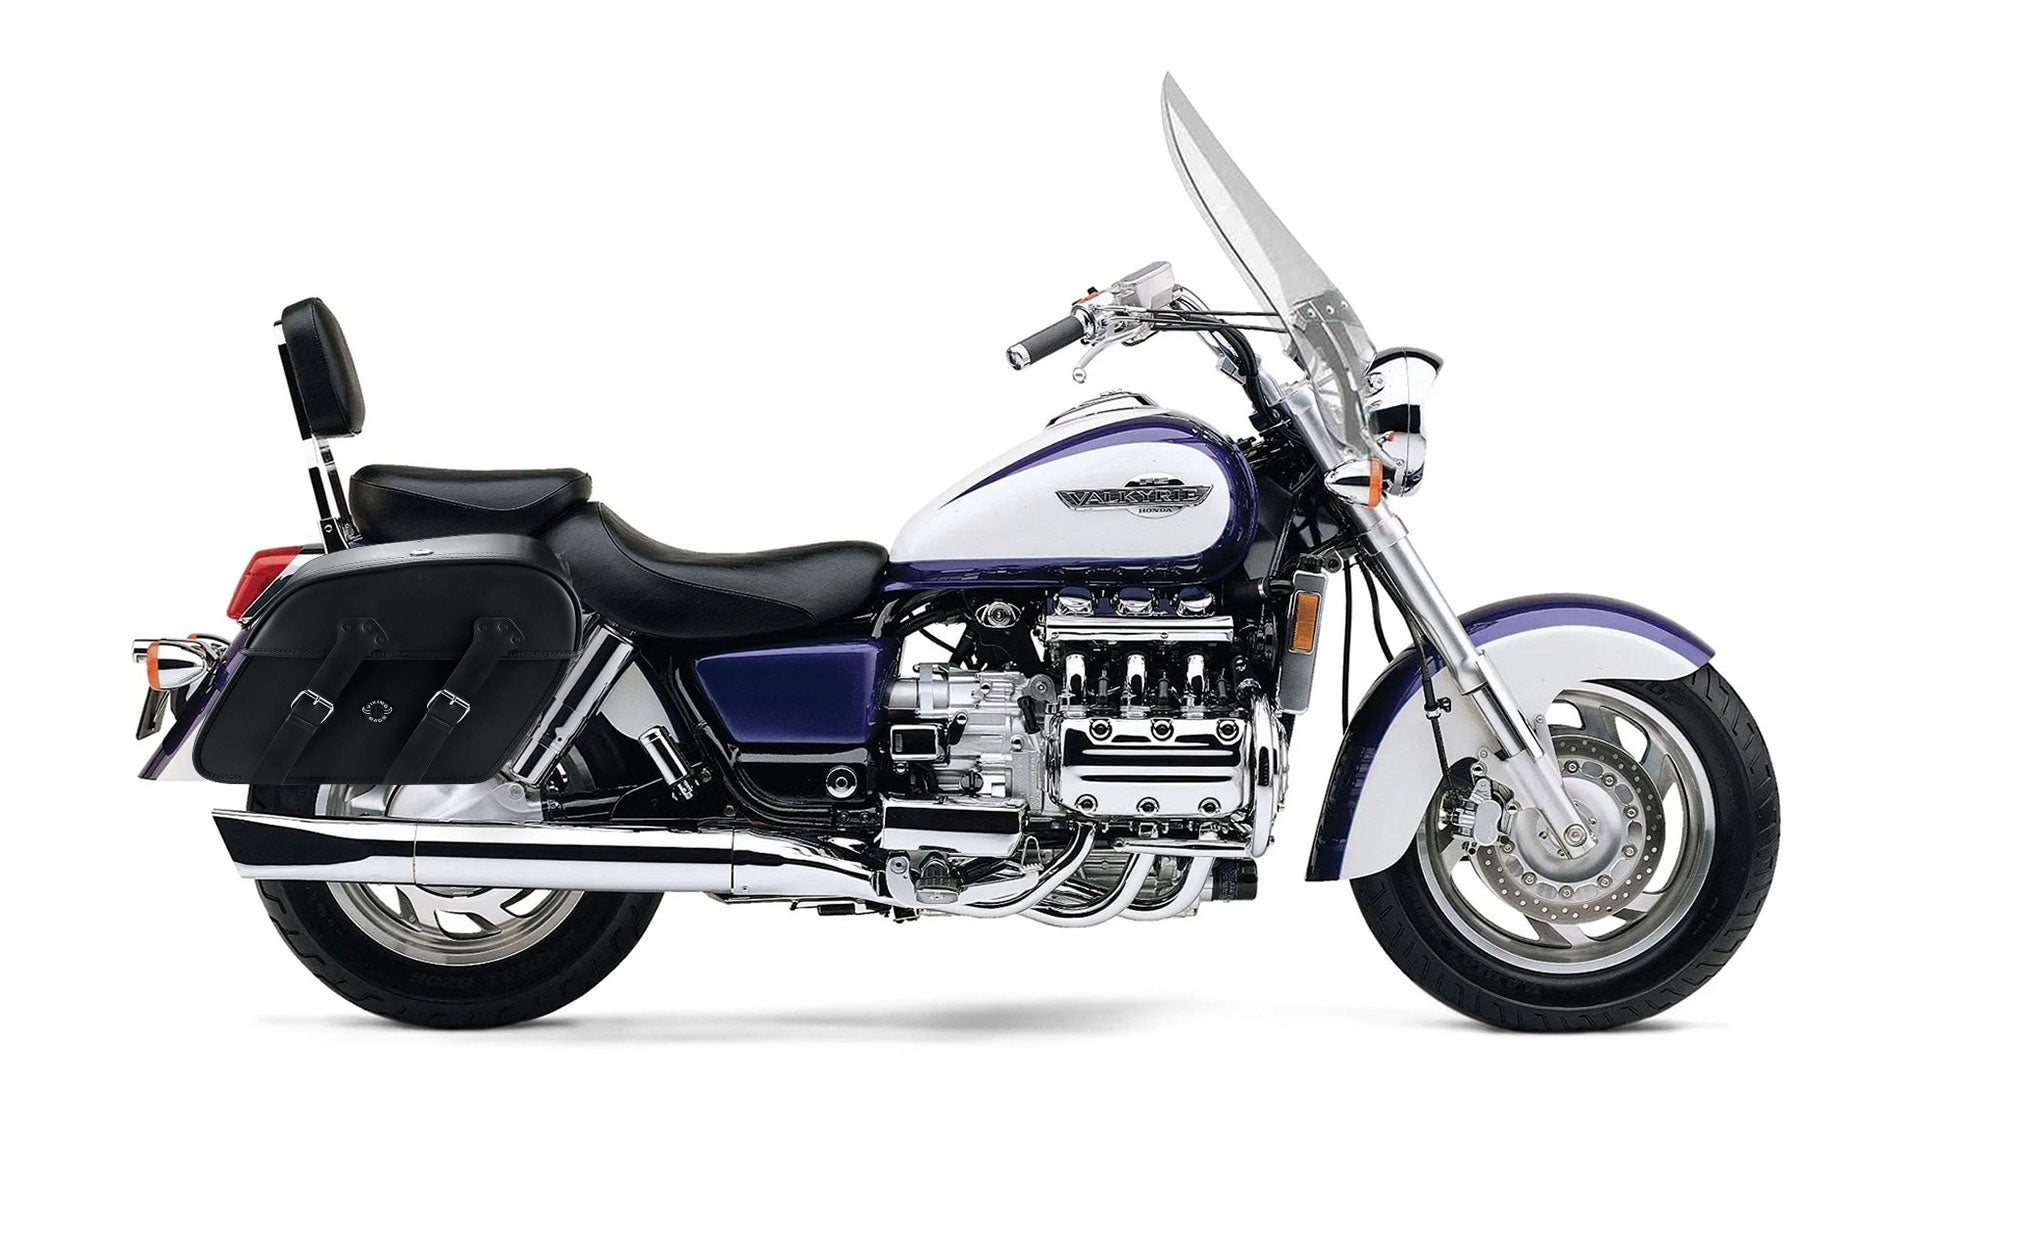 Viking Raven Extra Large Honda 1500 Valkyrie Tourer Leather Motorcycle Saddlebags on Bike Photo @expand